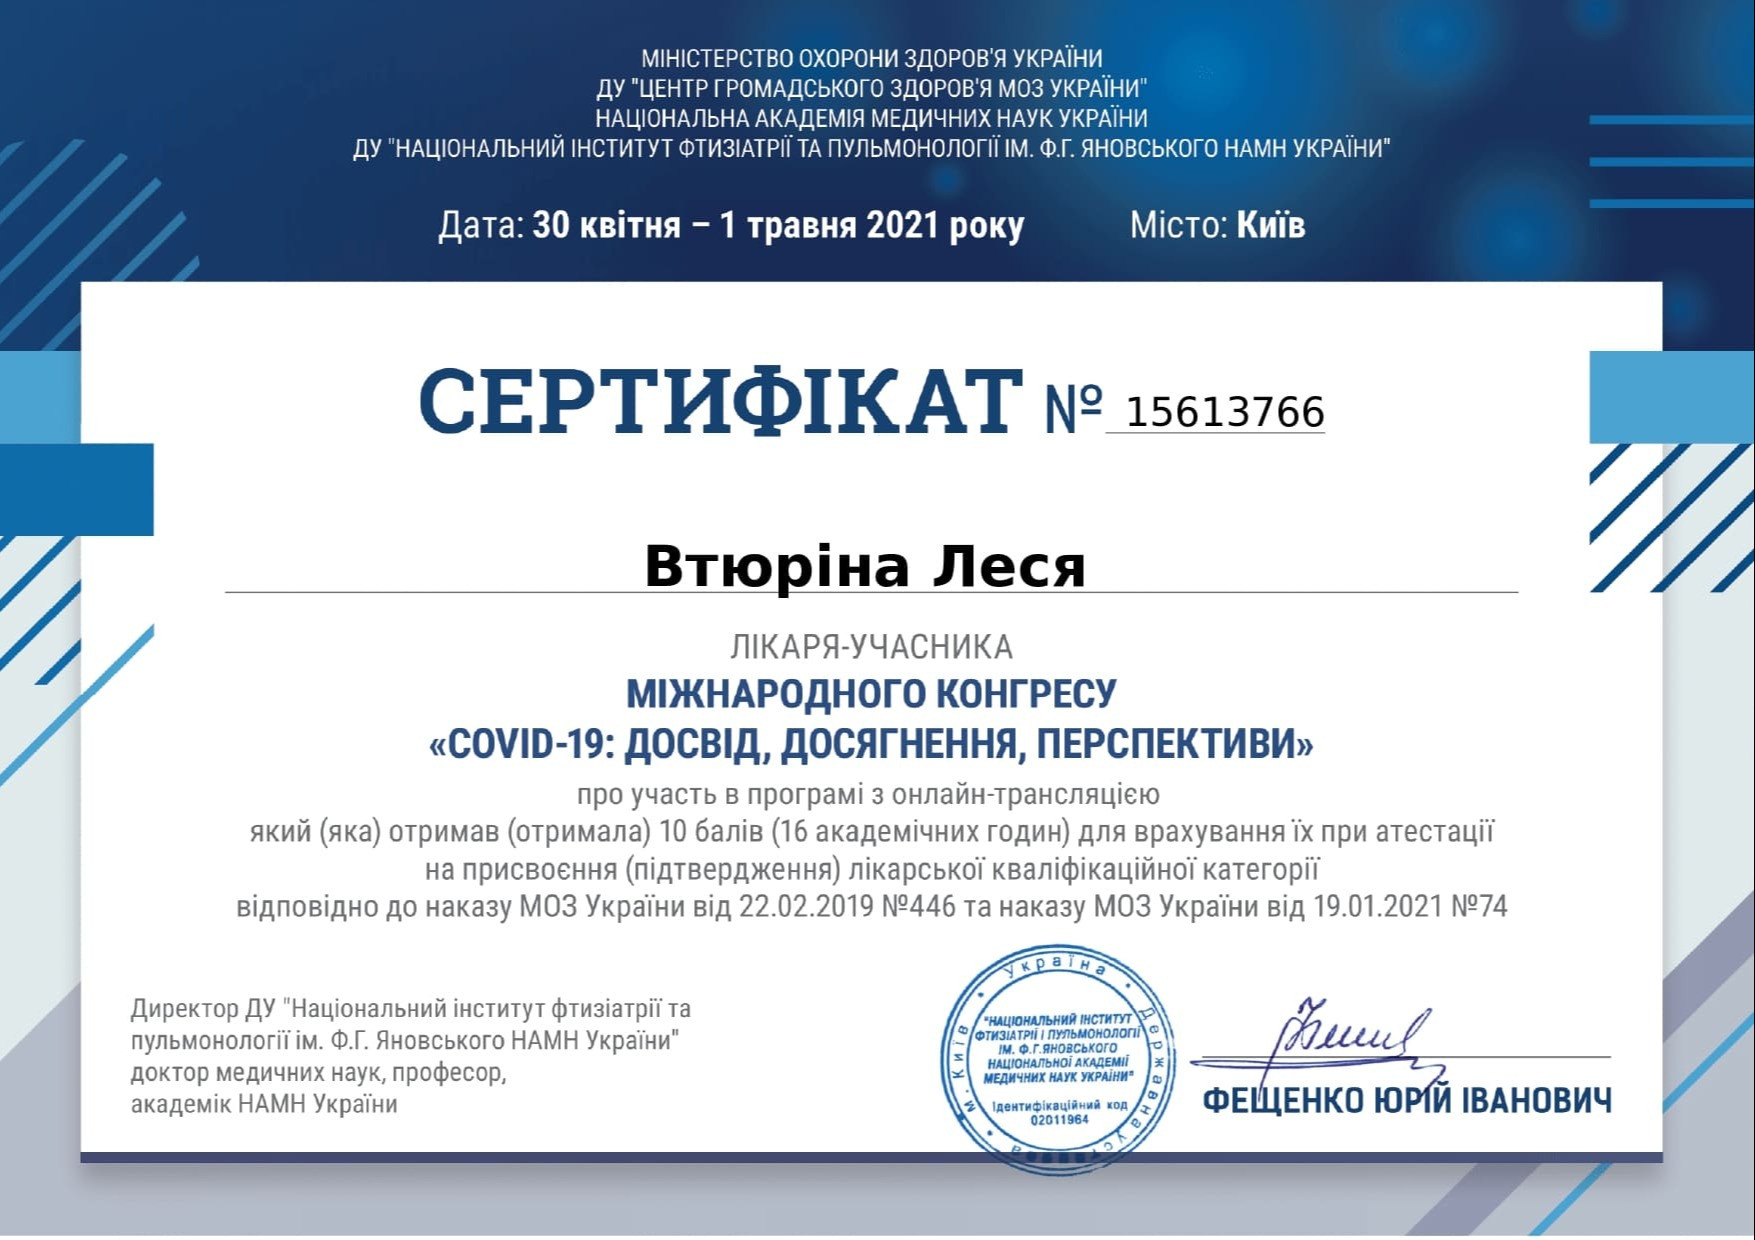 Сертификат об участи в международном конгрессе